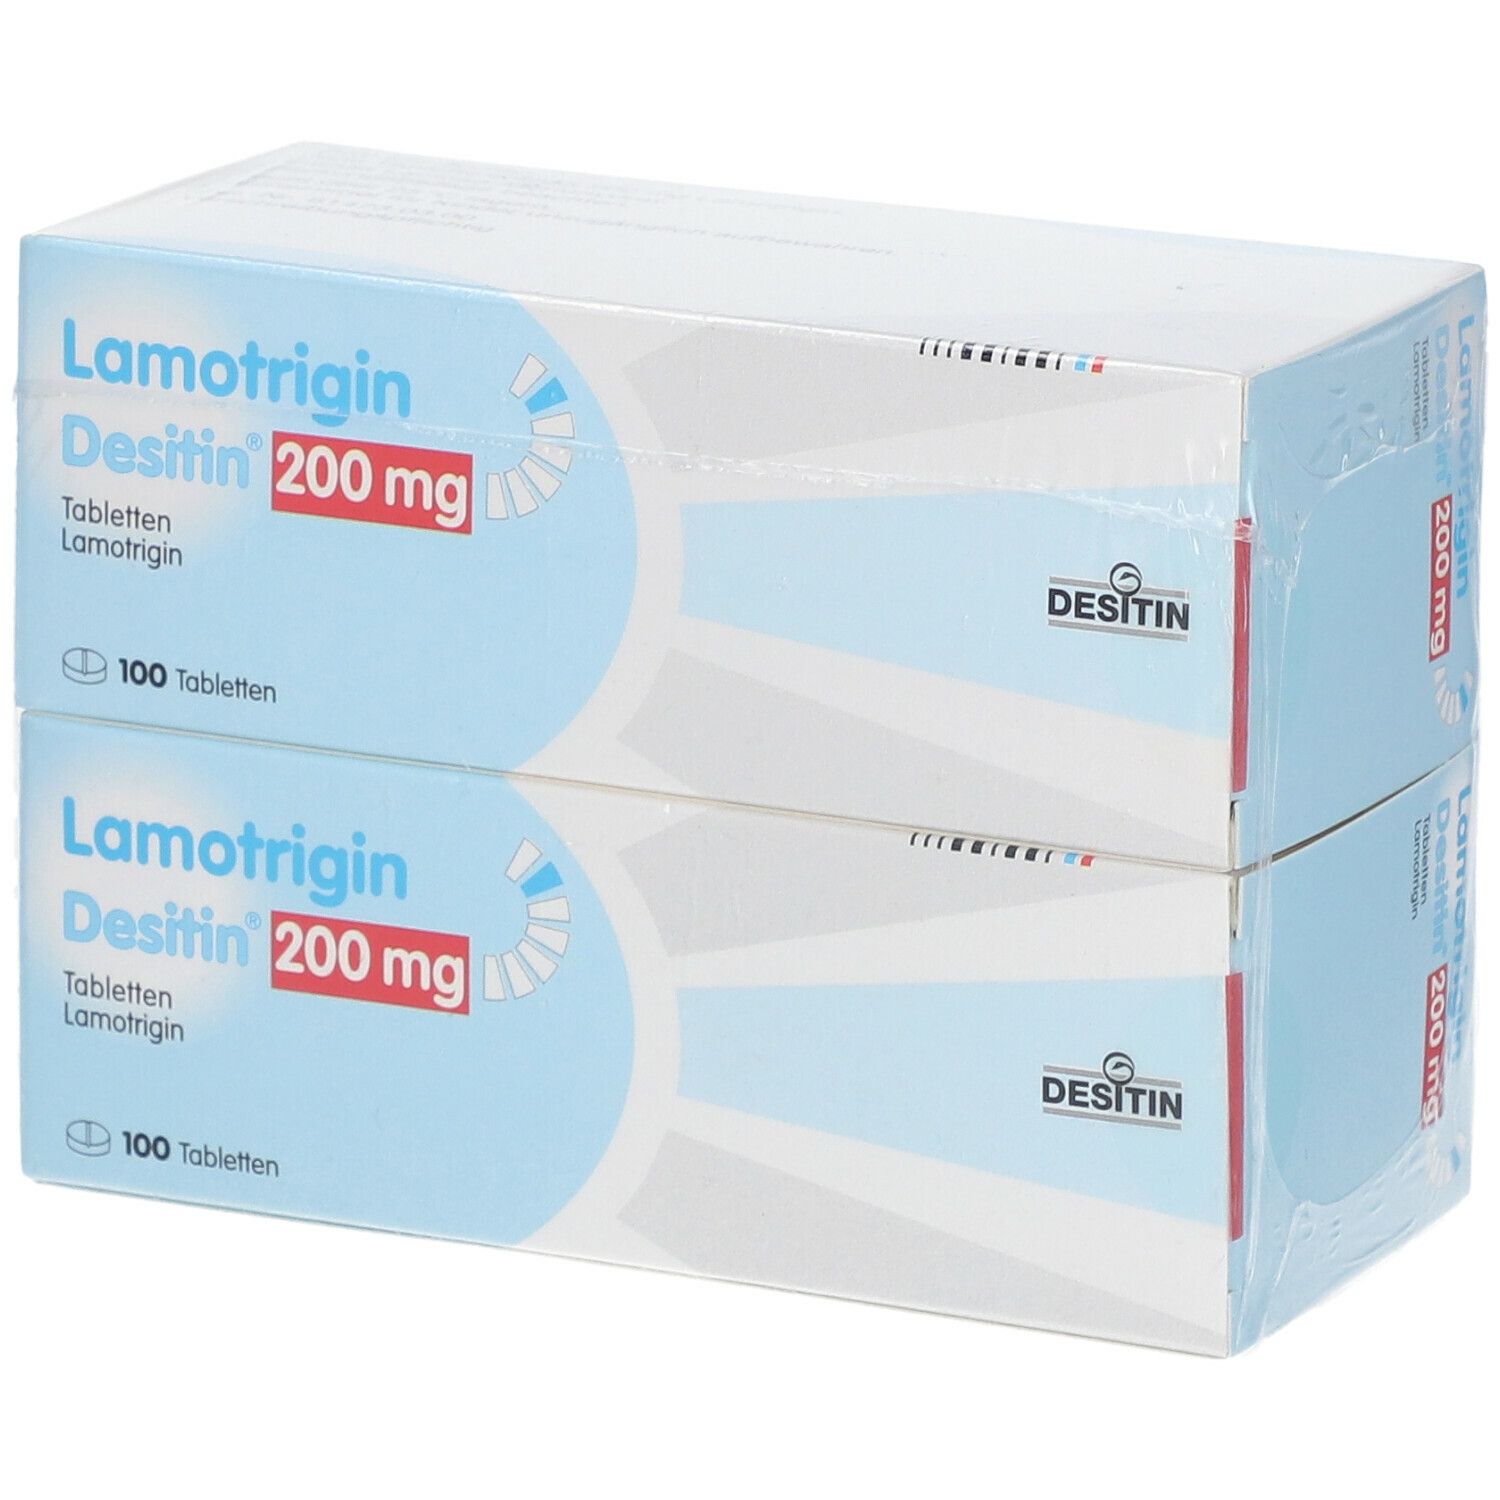 Lamotrigin Desitin® 200 mg